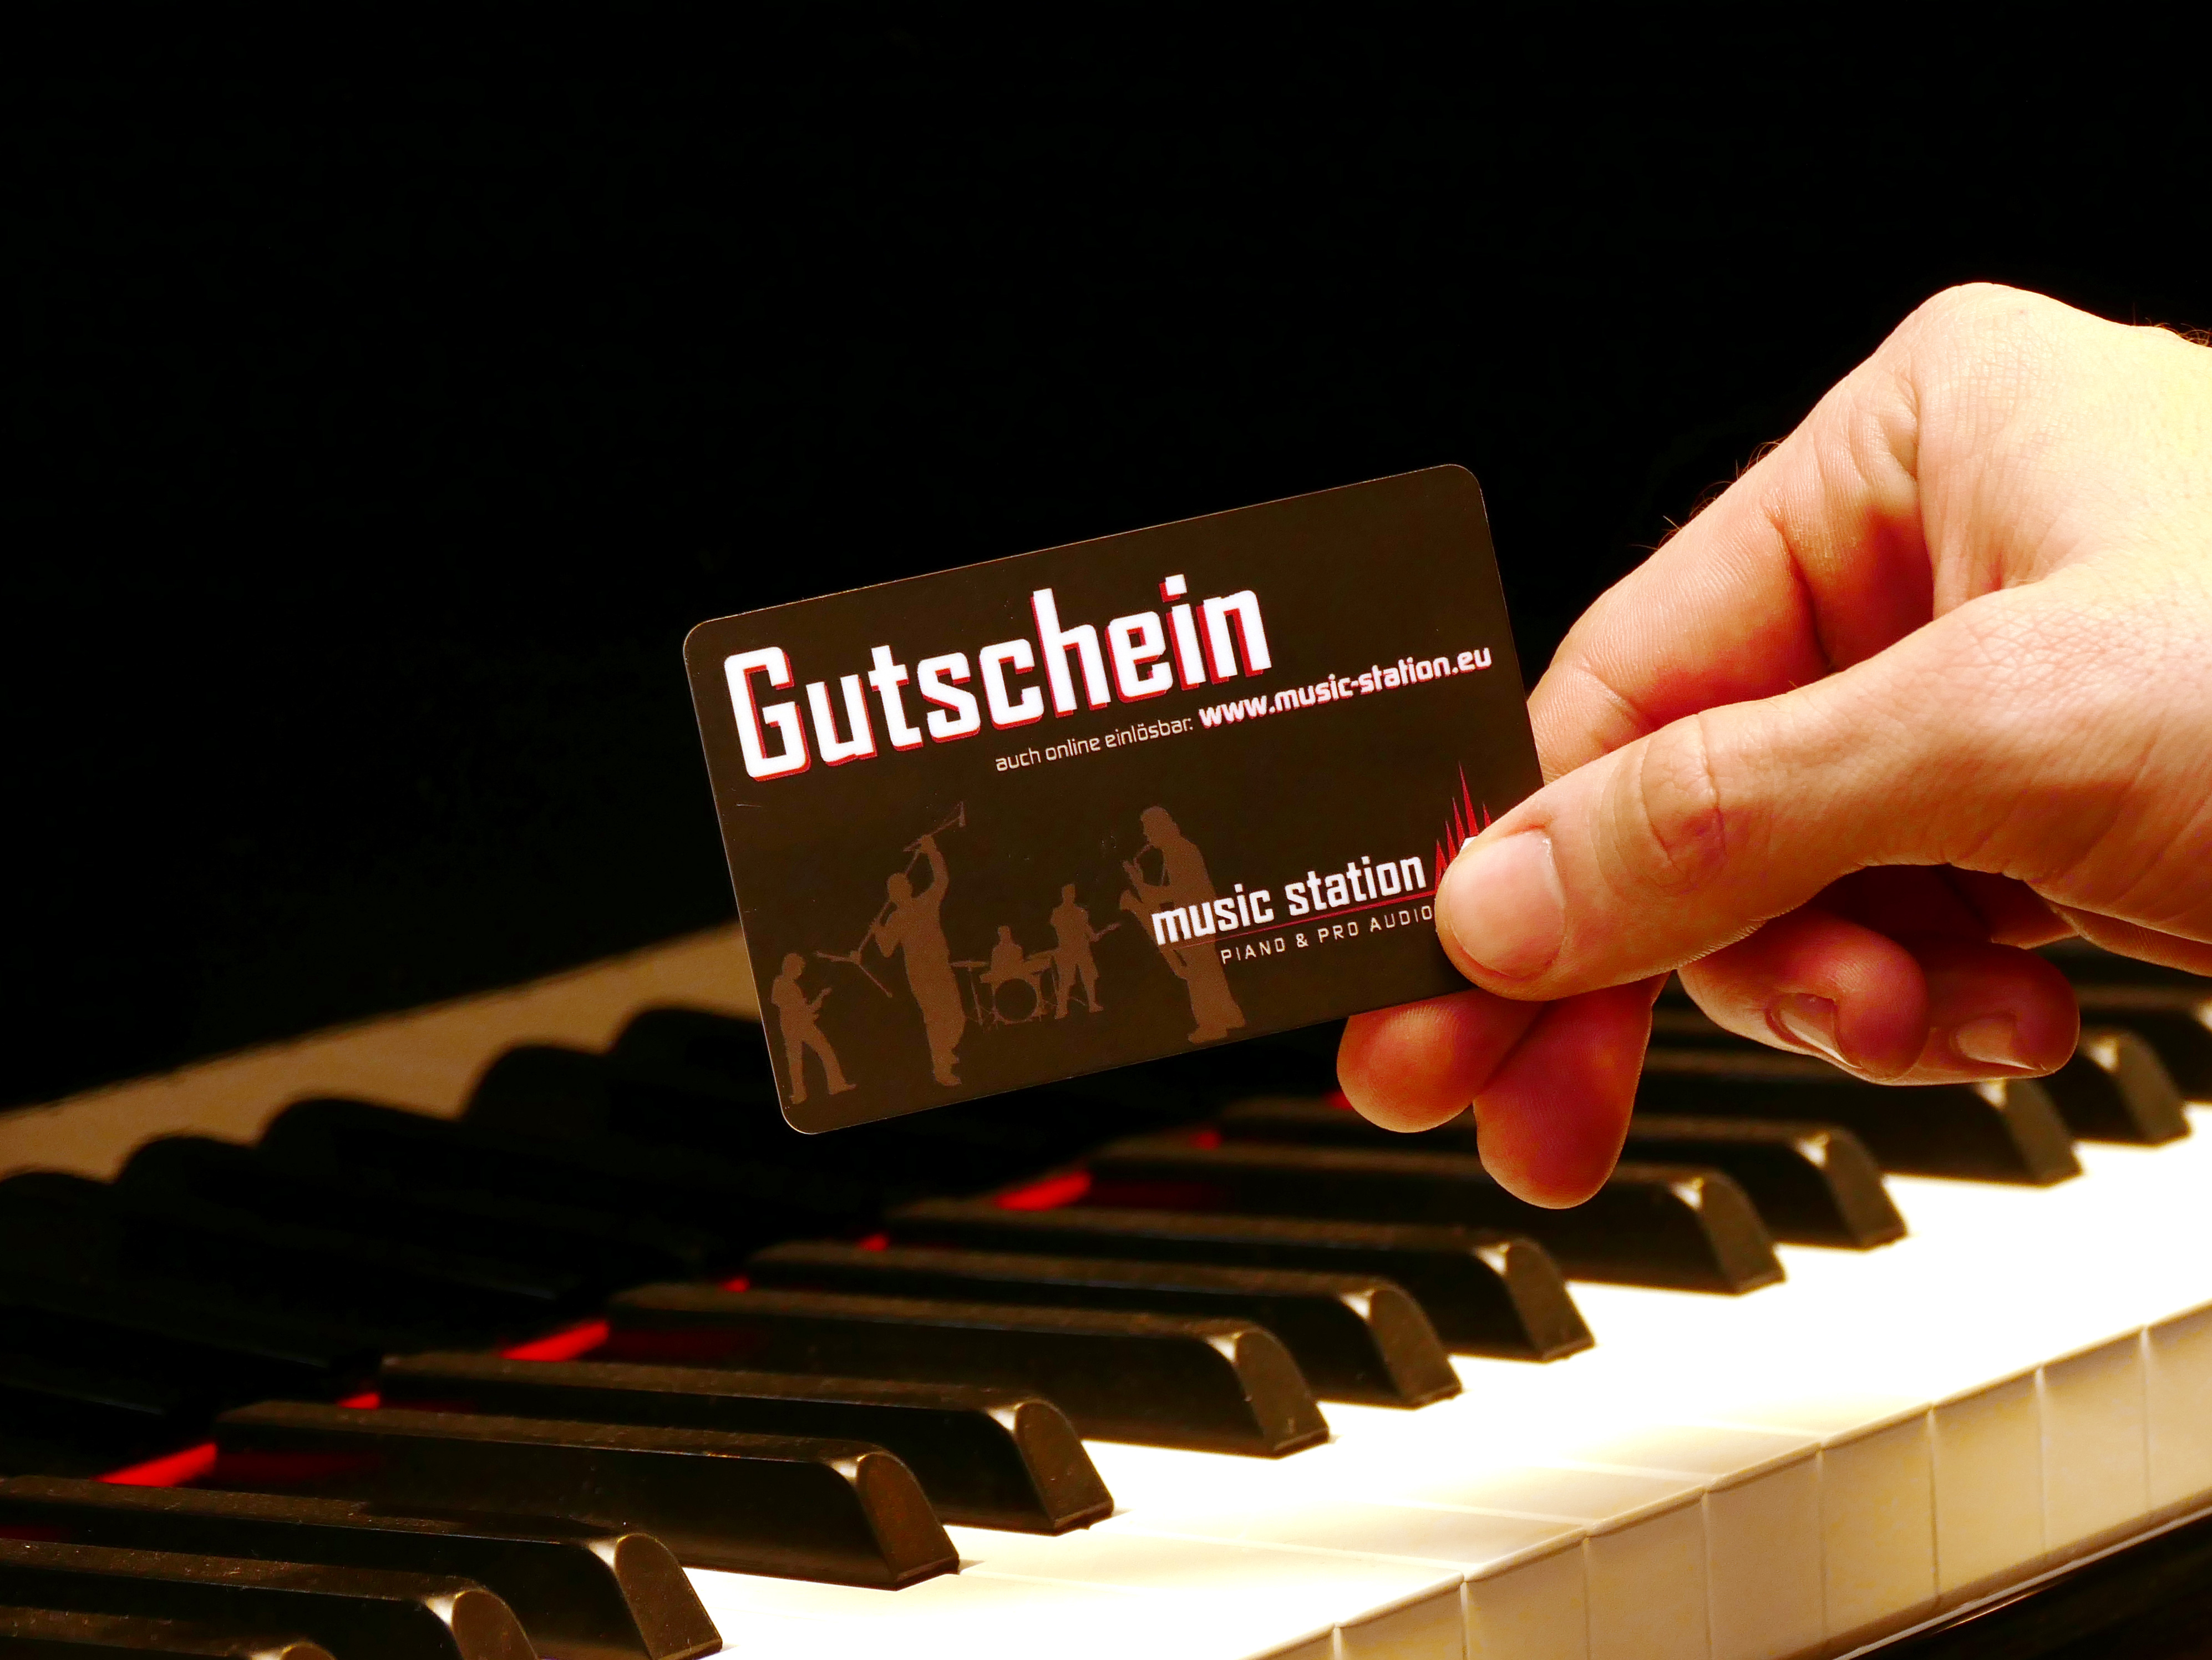 Music Station Gutschein 75 Euro